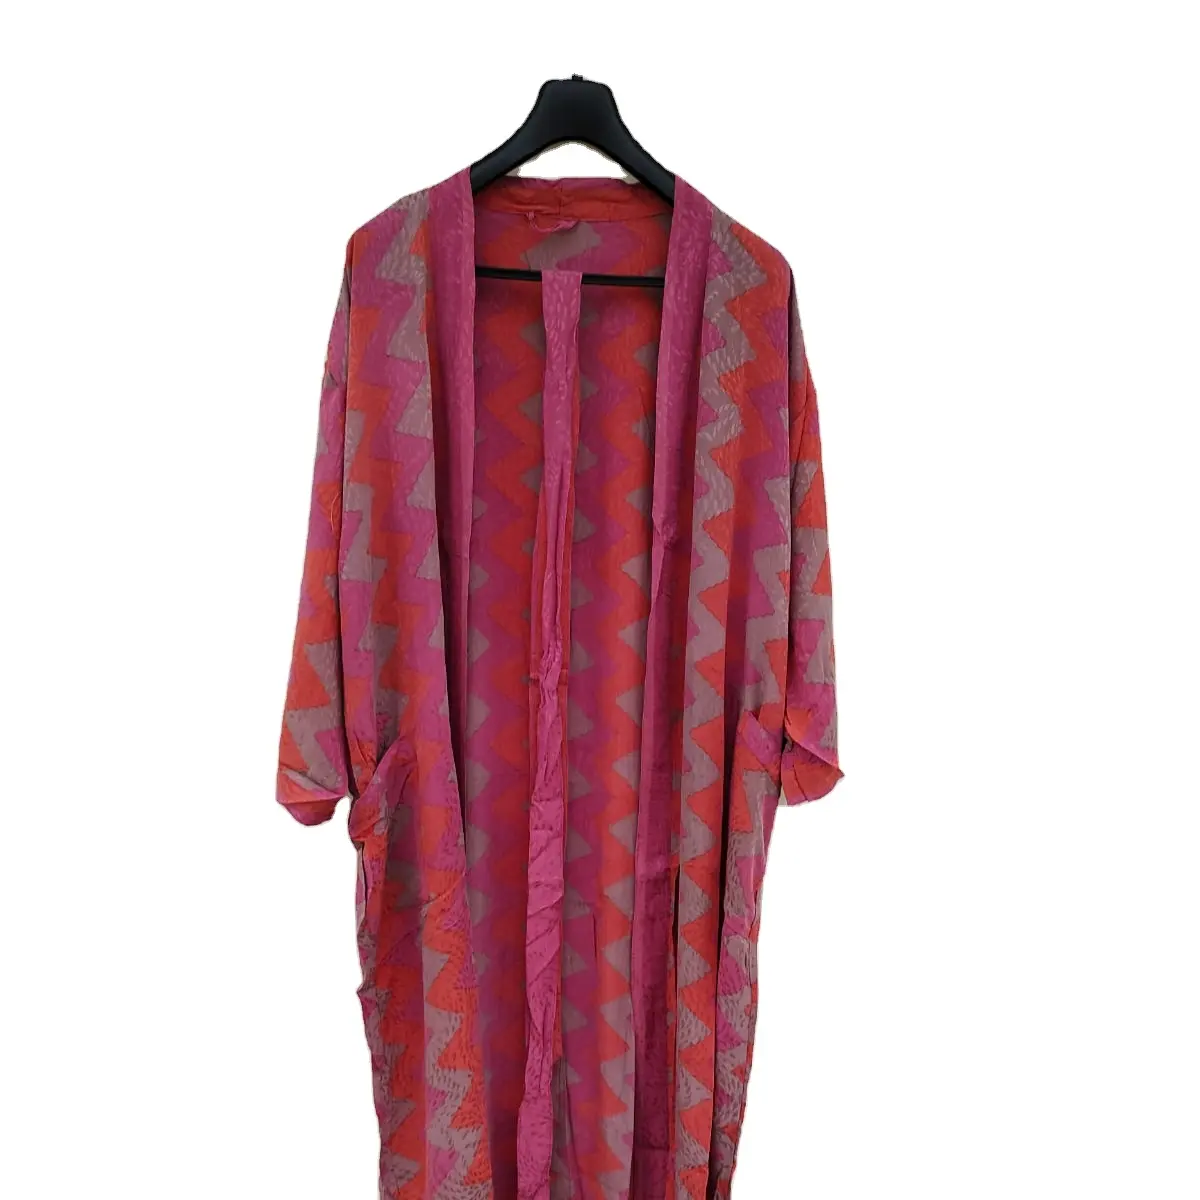 Bok Saree ipek kimono ücretsiz boyutu kimono gecelik elbise plaj giyim yaz toptan fiyat giymek